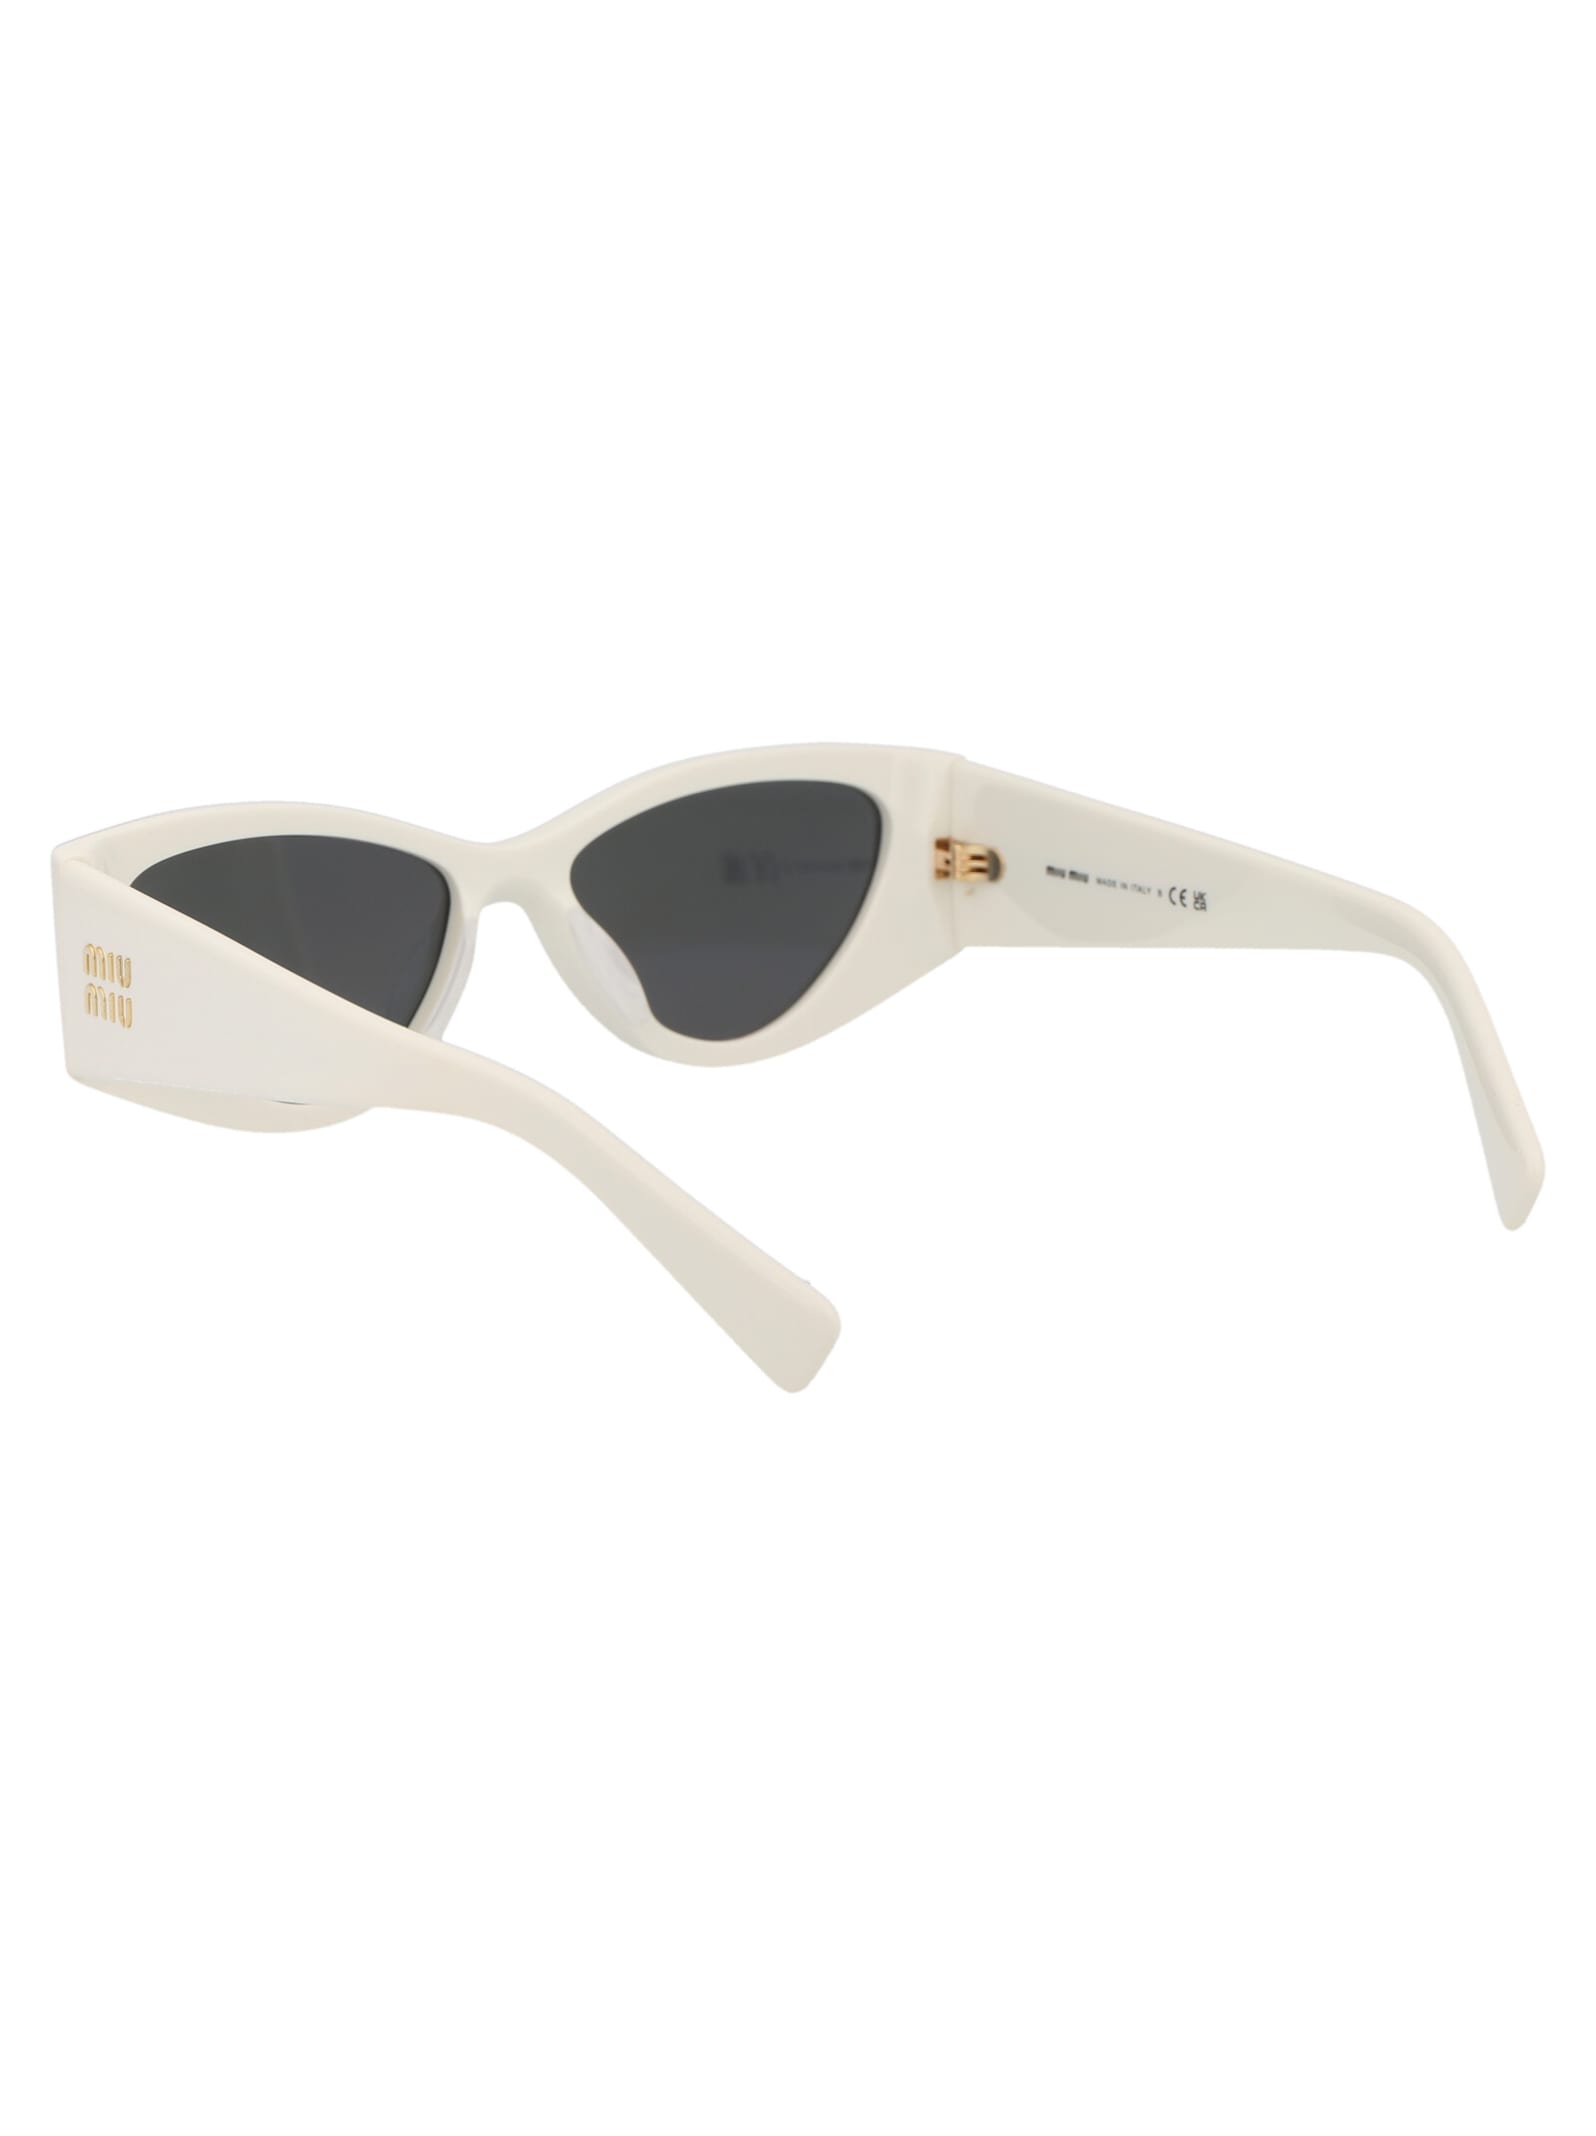 Shop Miu Miu 0mu 06ys Sunglasses In 1425s0 White